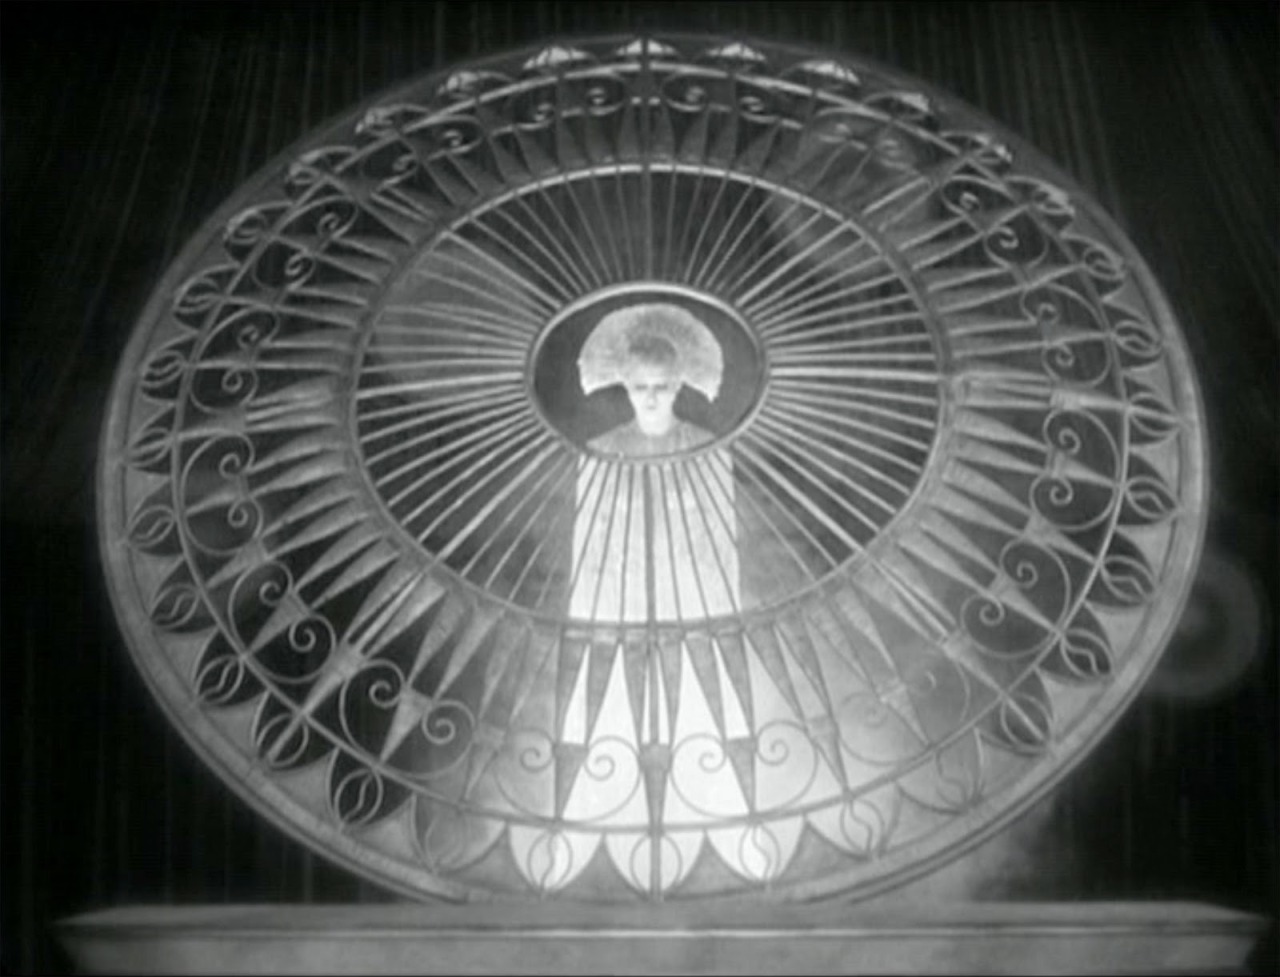 Brigitte Helm in Metropolis
Fritz Lang, 1927